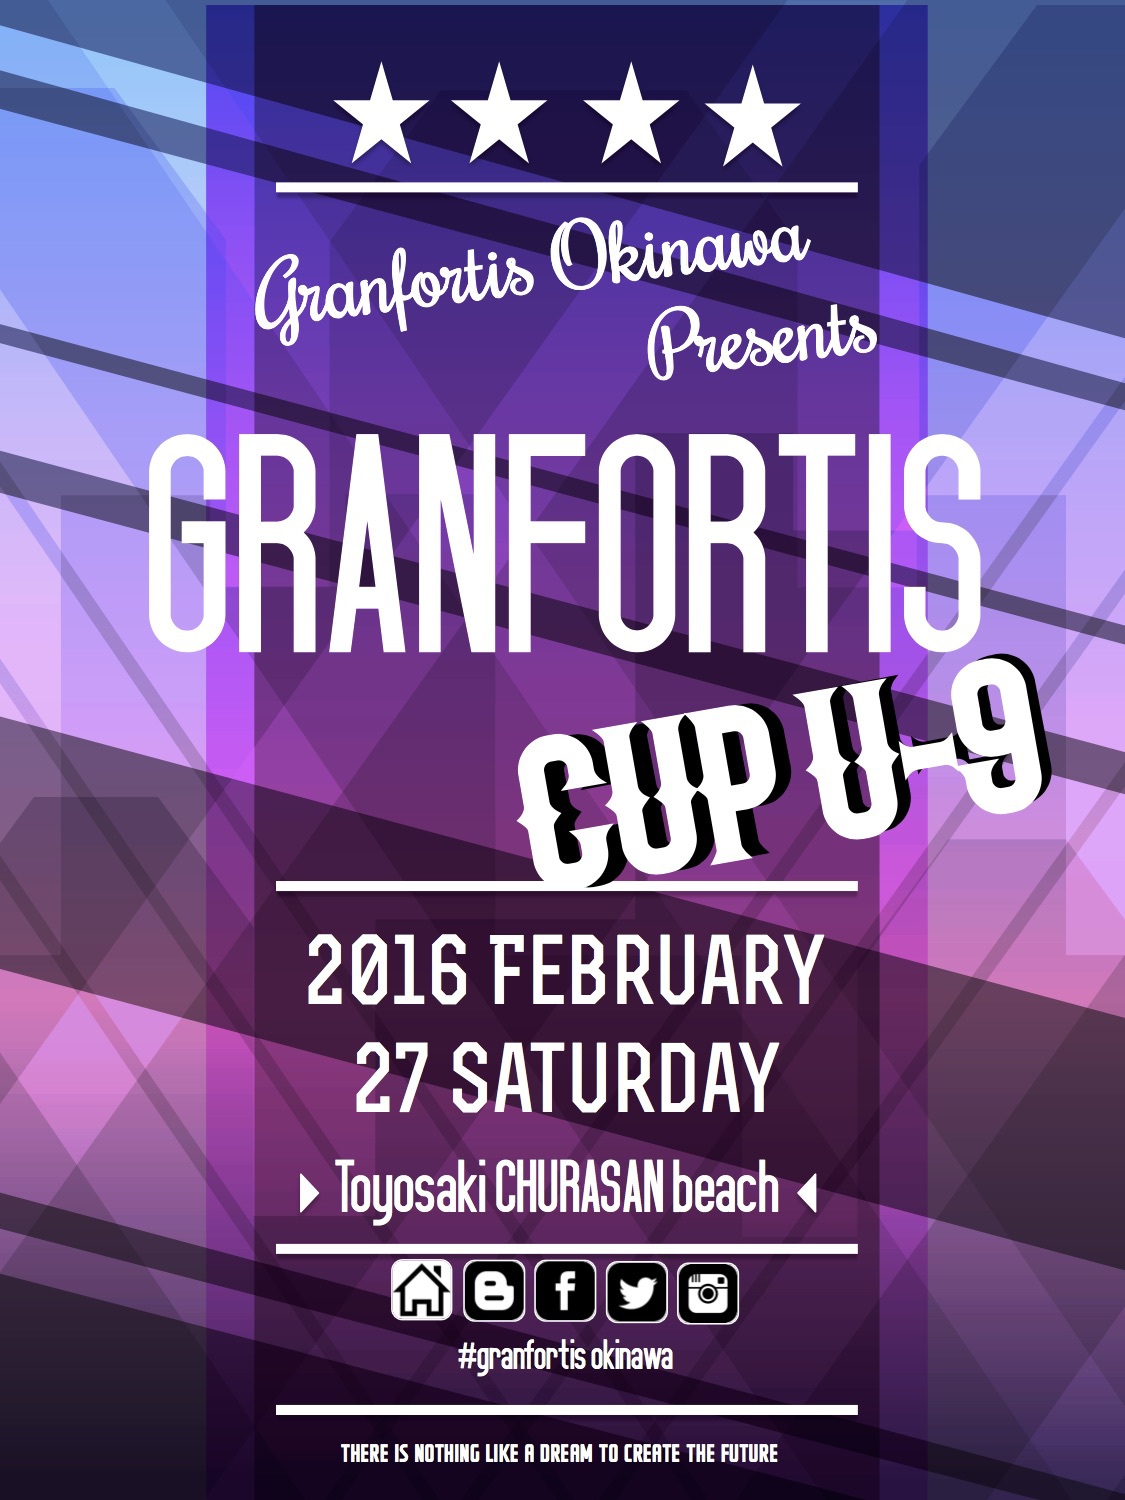 グランフォルティスカップU-9開催！参加16チーム募集のお知らせ